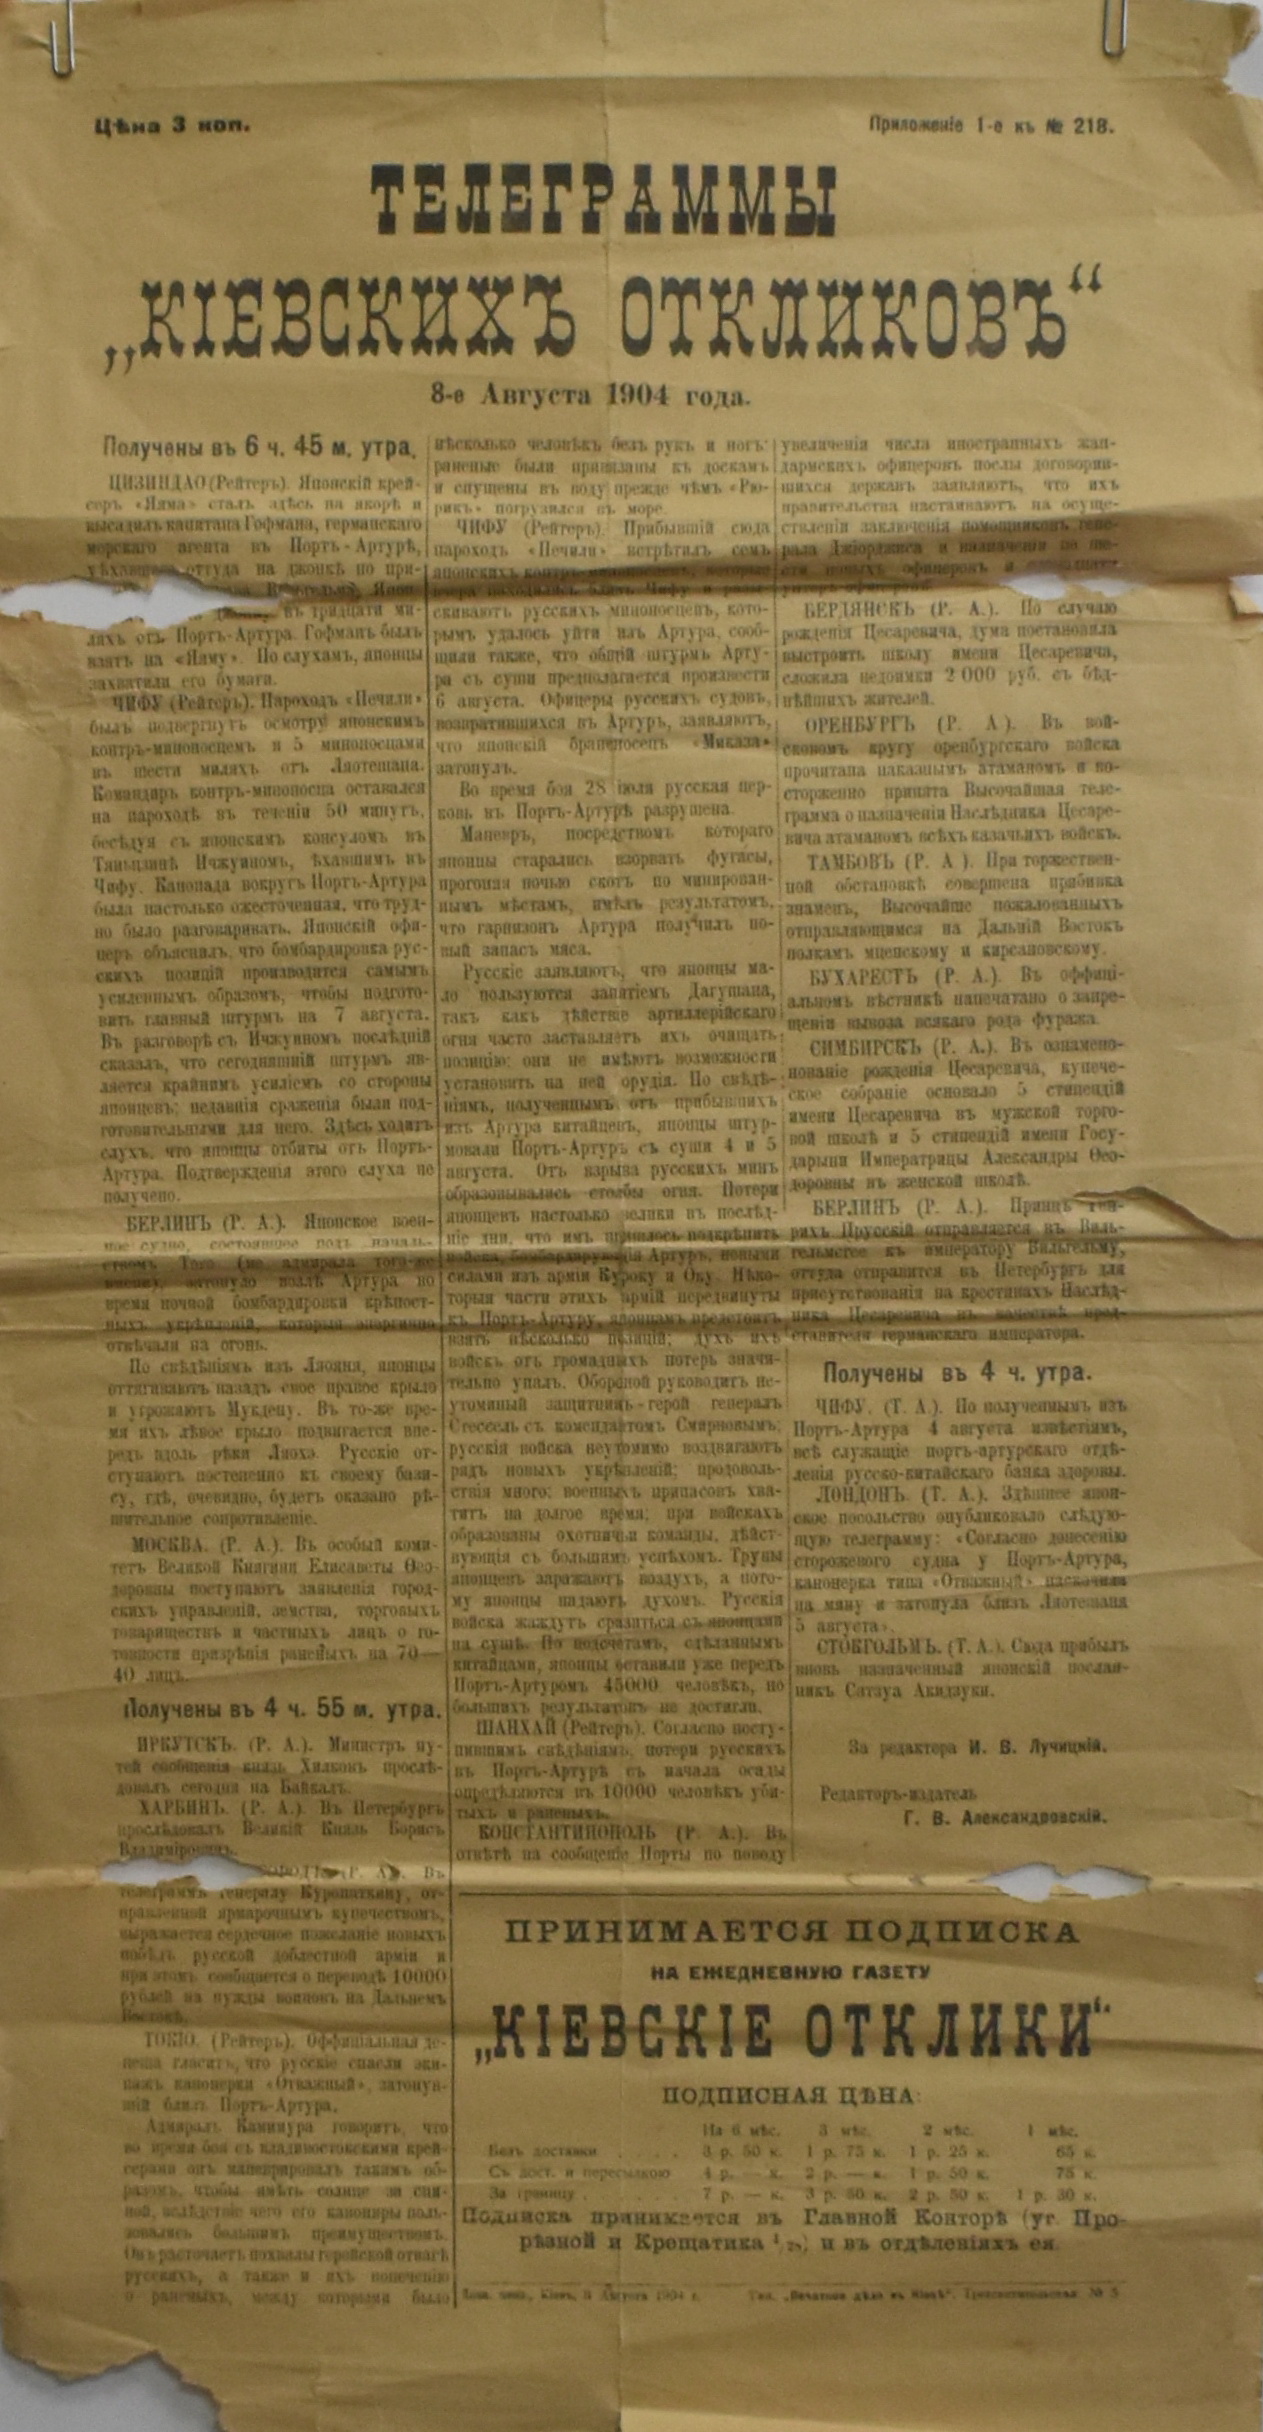 Додаток І до газети 1904. № 218 (8 серпня). "Телеграммы "Кіевскихъ откликовъ" 